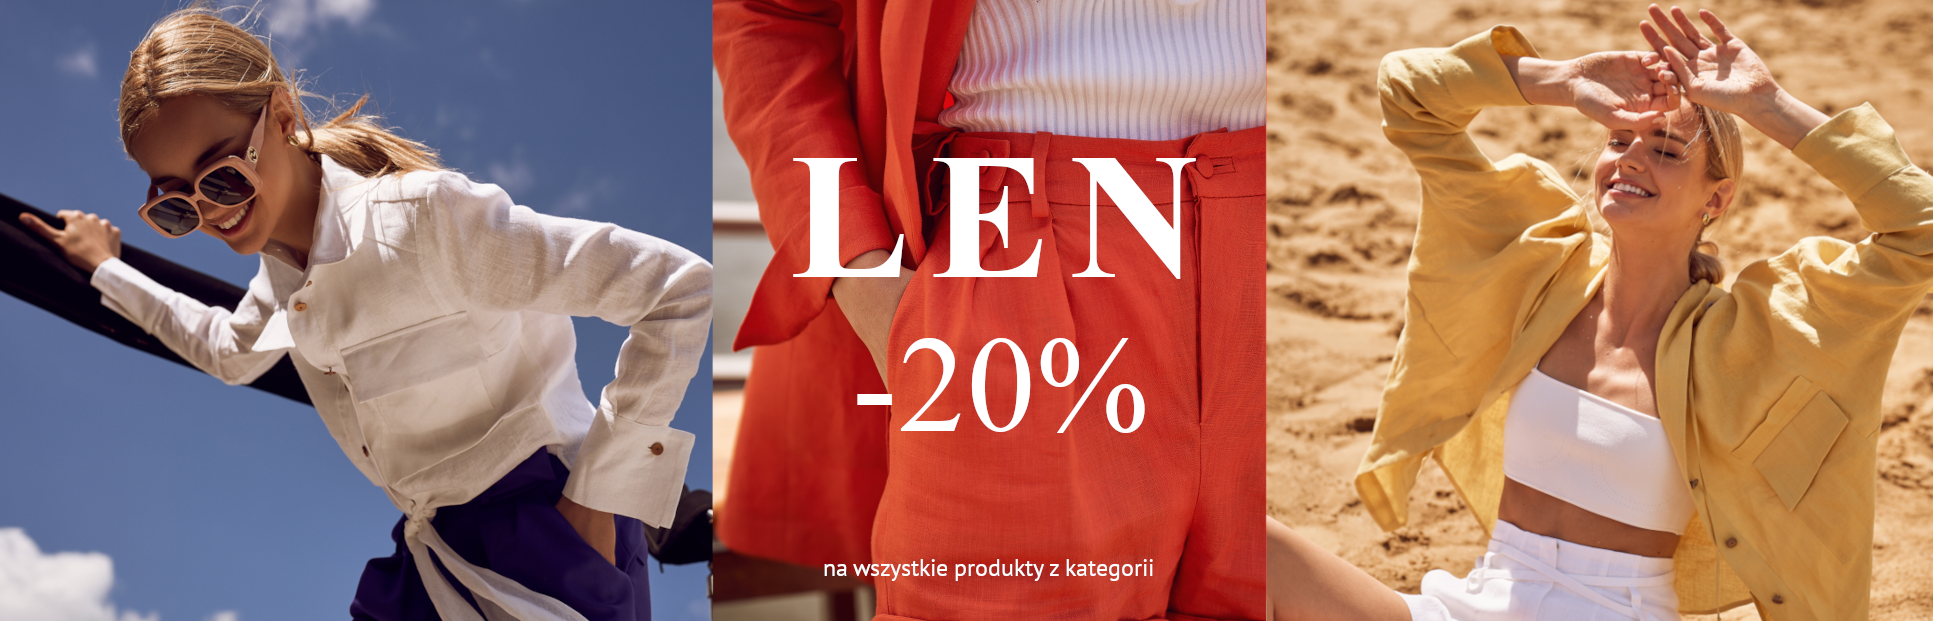 Len -20%